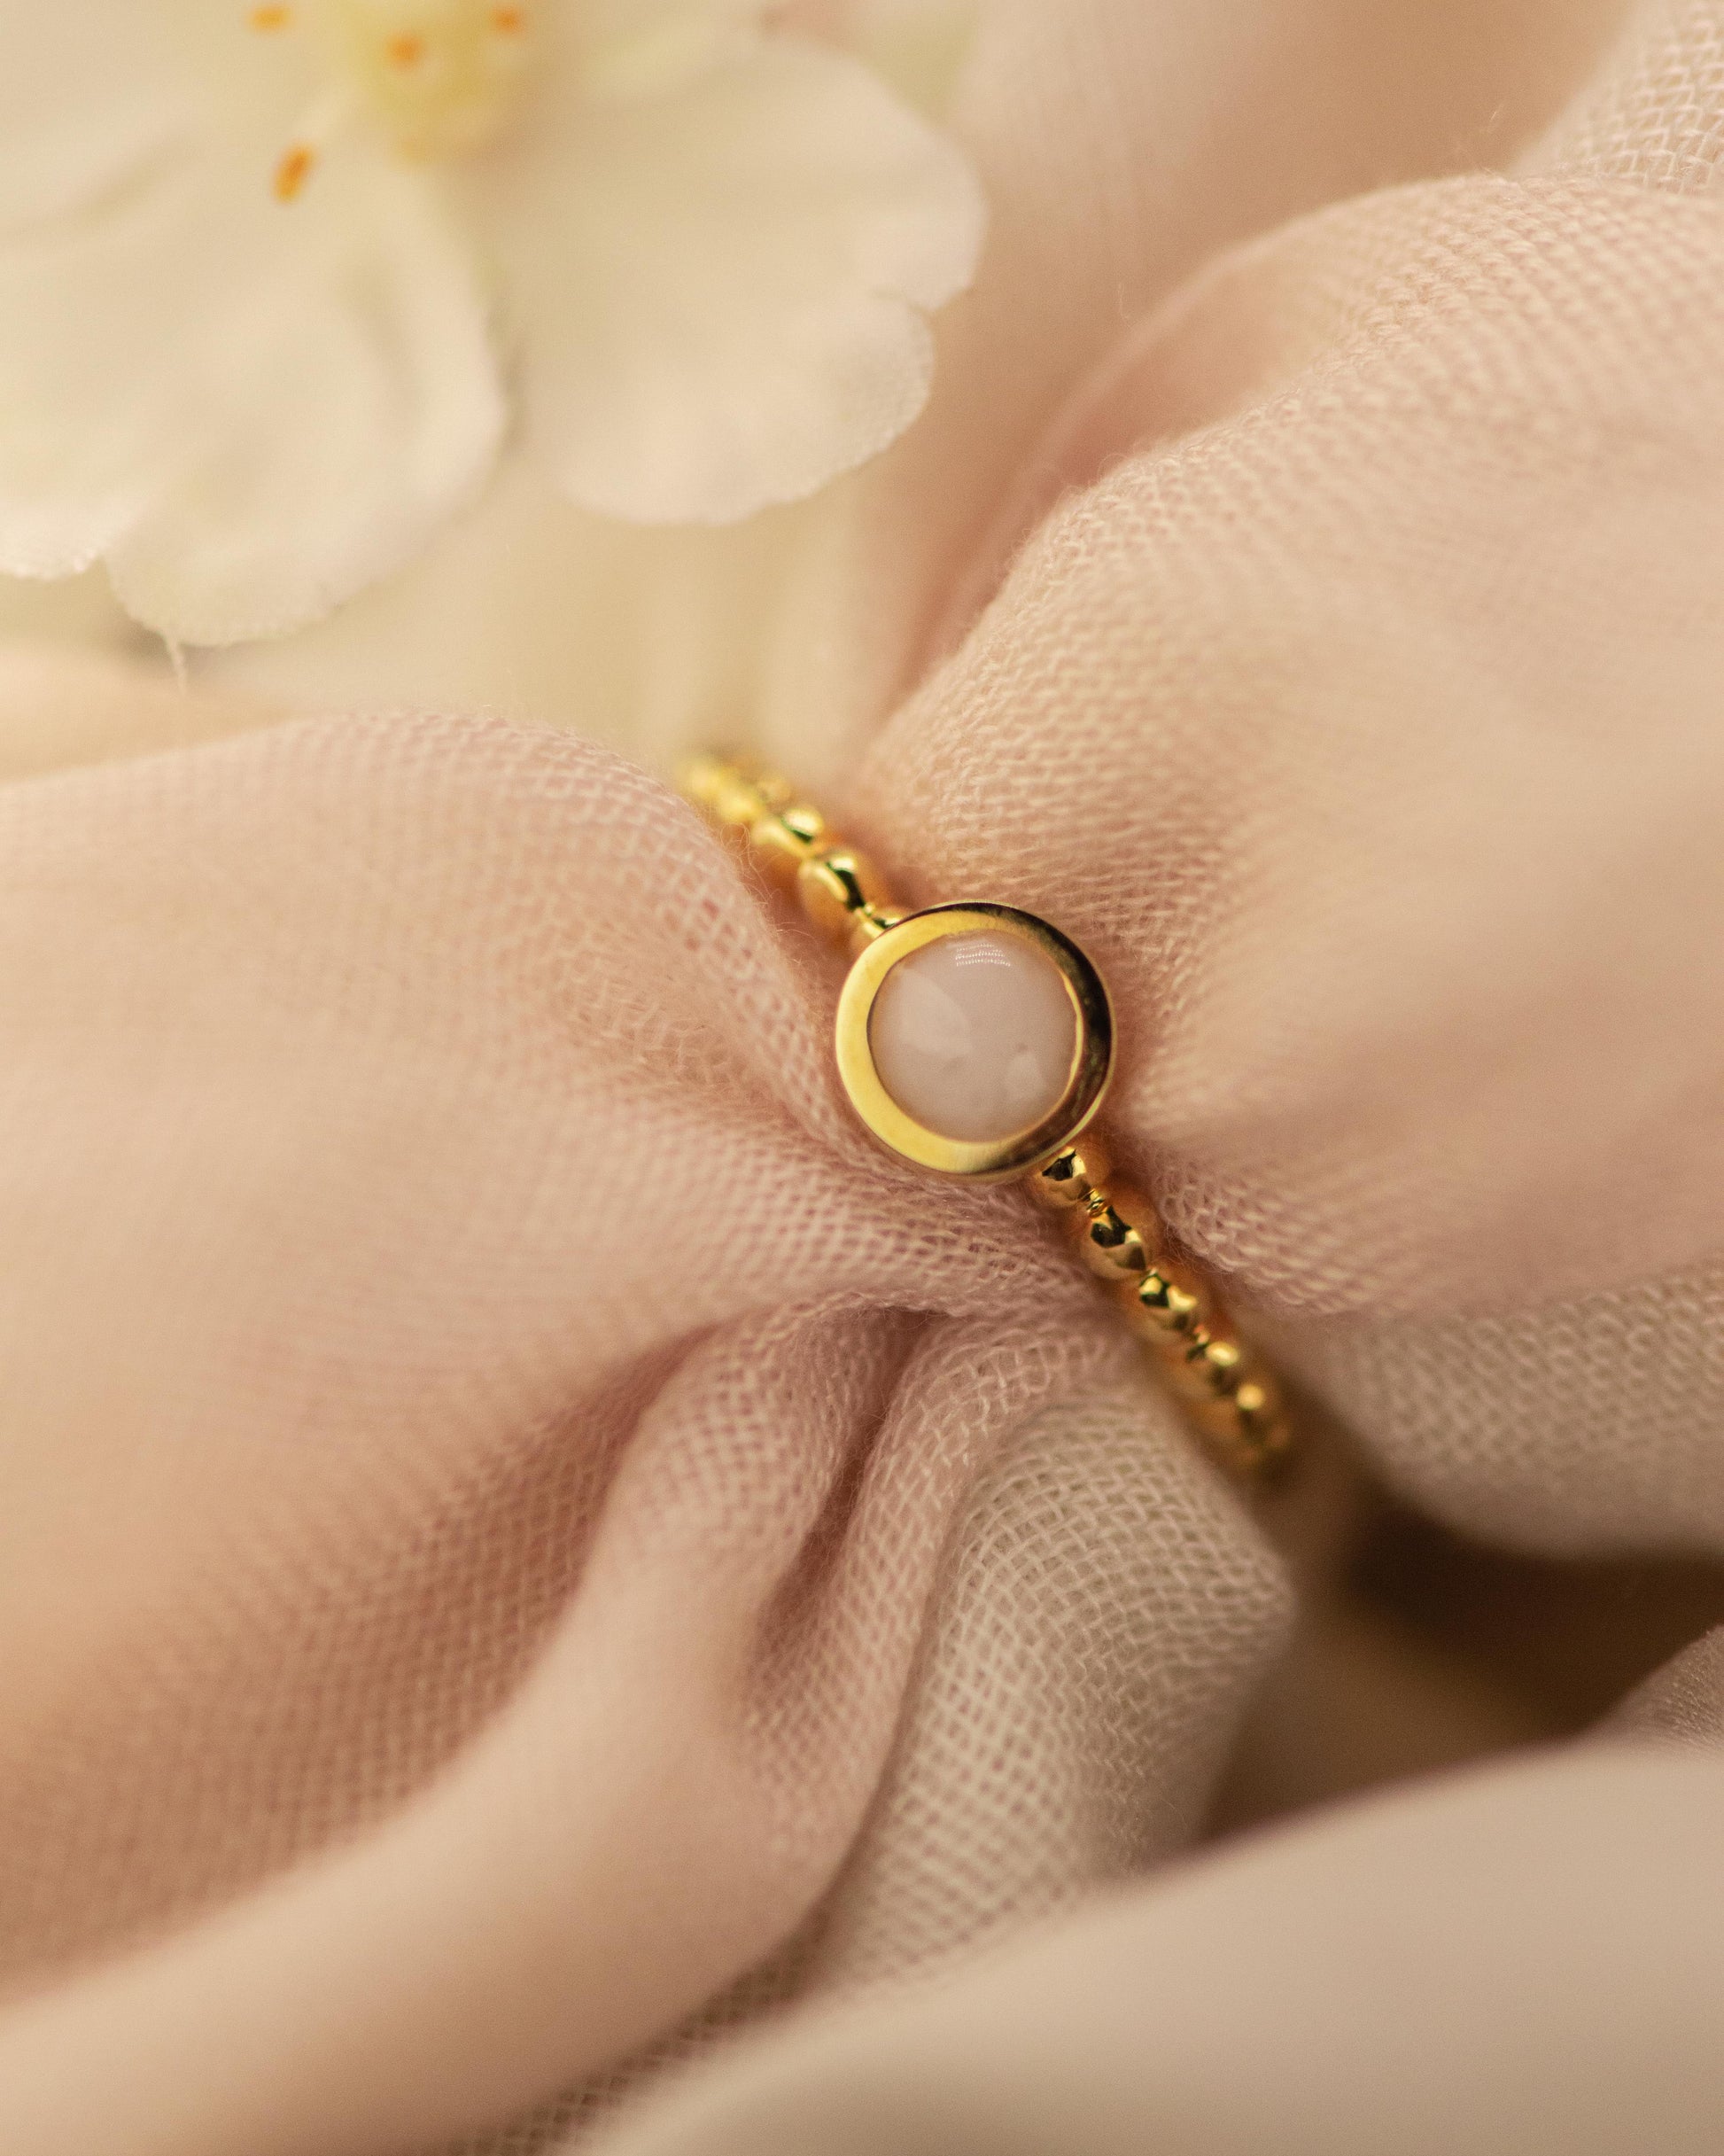 Diameter rondje: 6 mm, Ringband: 2 mm. Ring als gedenksieraad met een rondje er boven op , waar zichtbaar as of haar  in verwerkt wordt. De asring is leverbaar in zilver en in 14 en 18 KT geelgoud/witgoud en roségoud. 